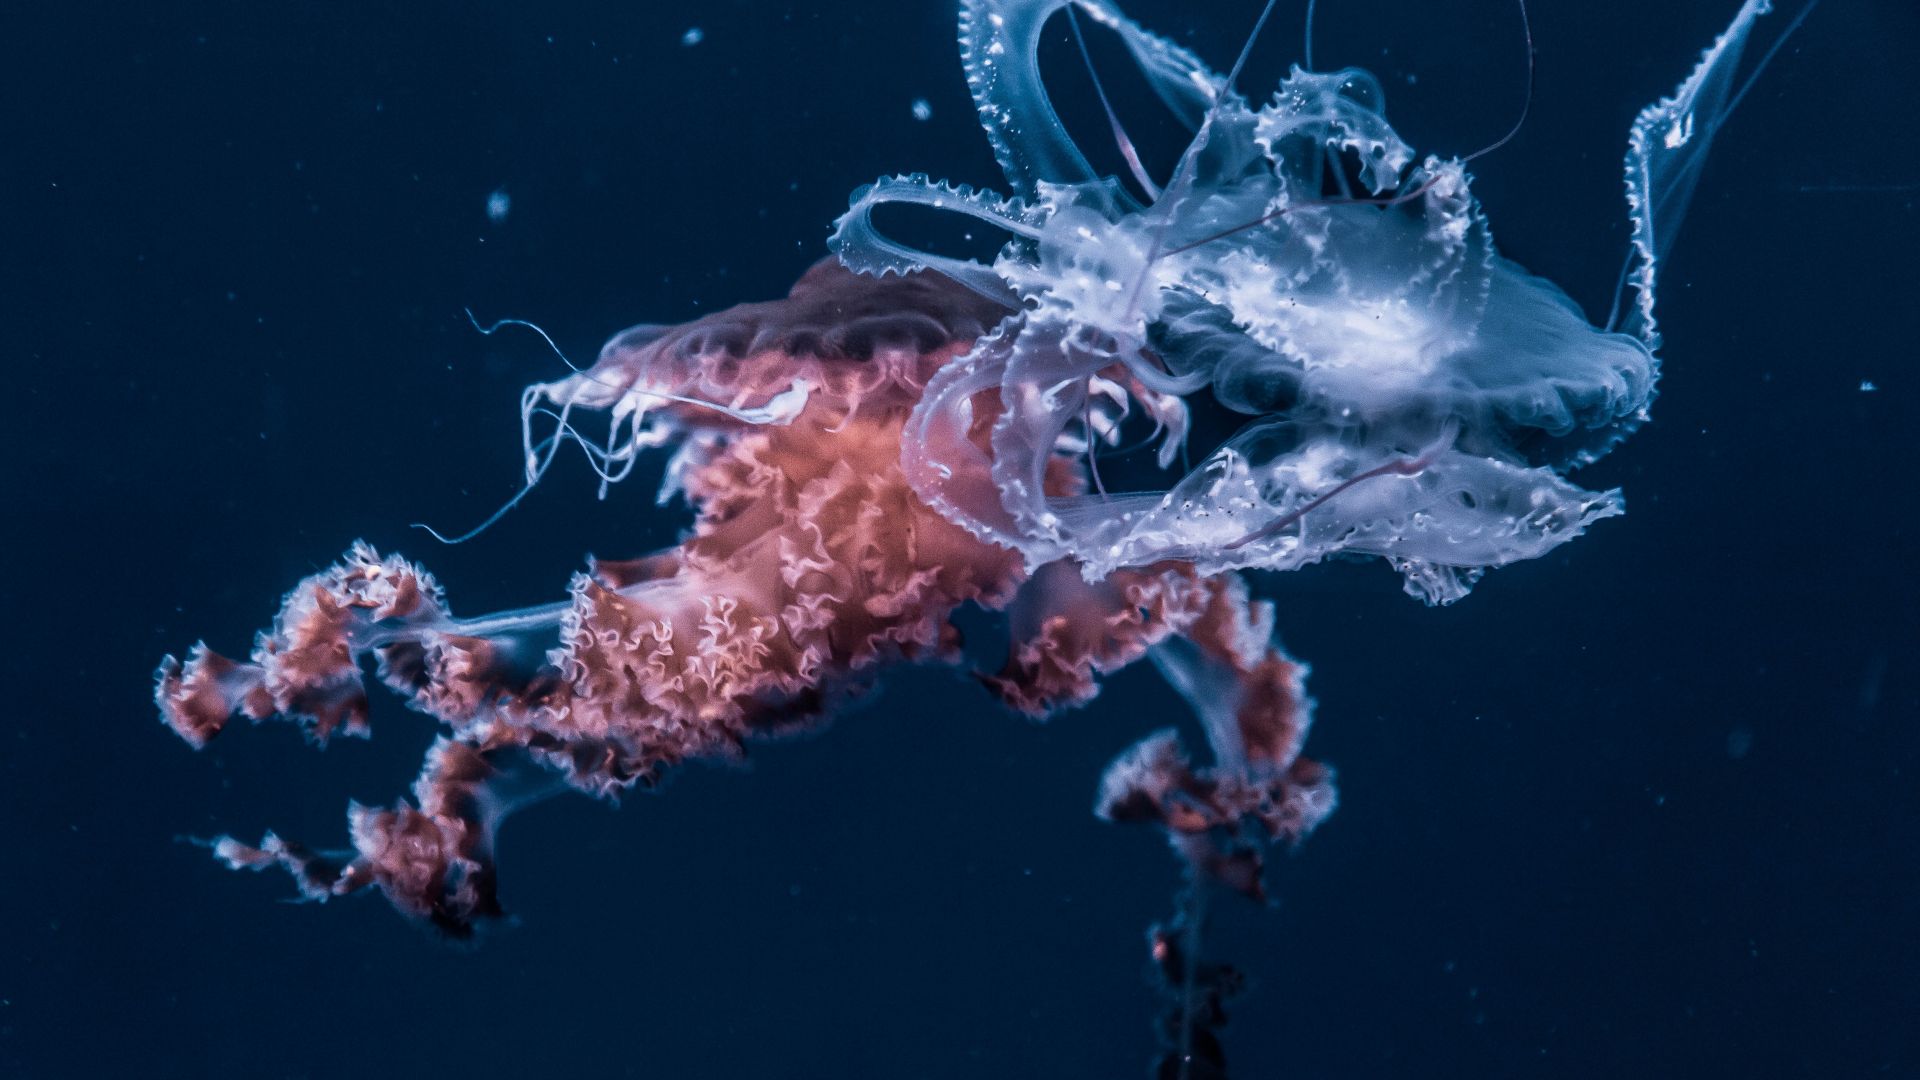 Wallpaper Jellyfish, underwater, animals